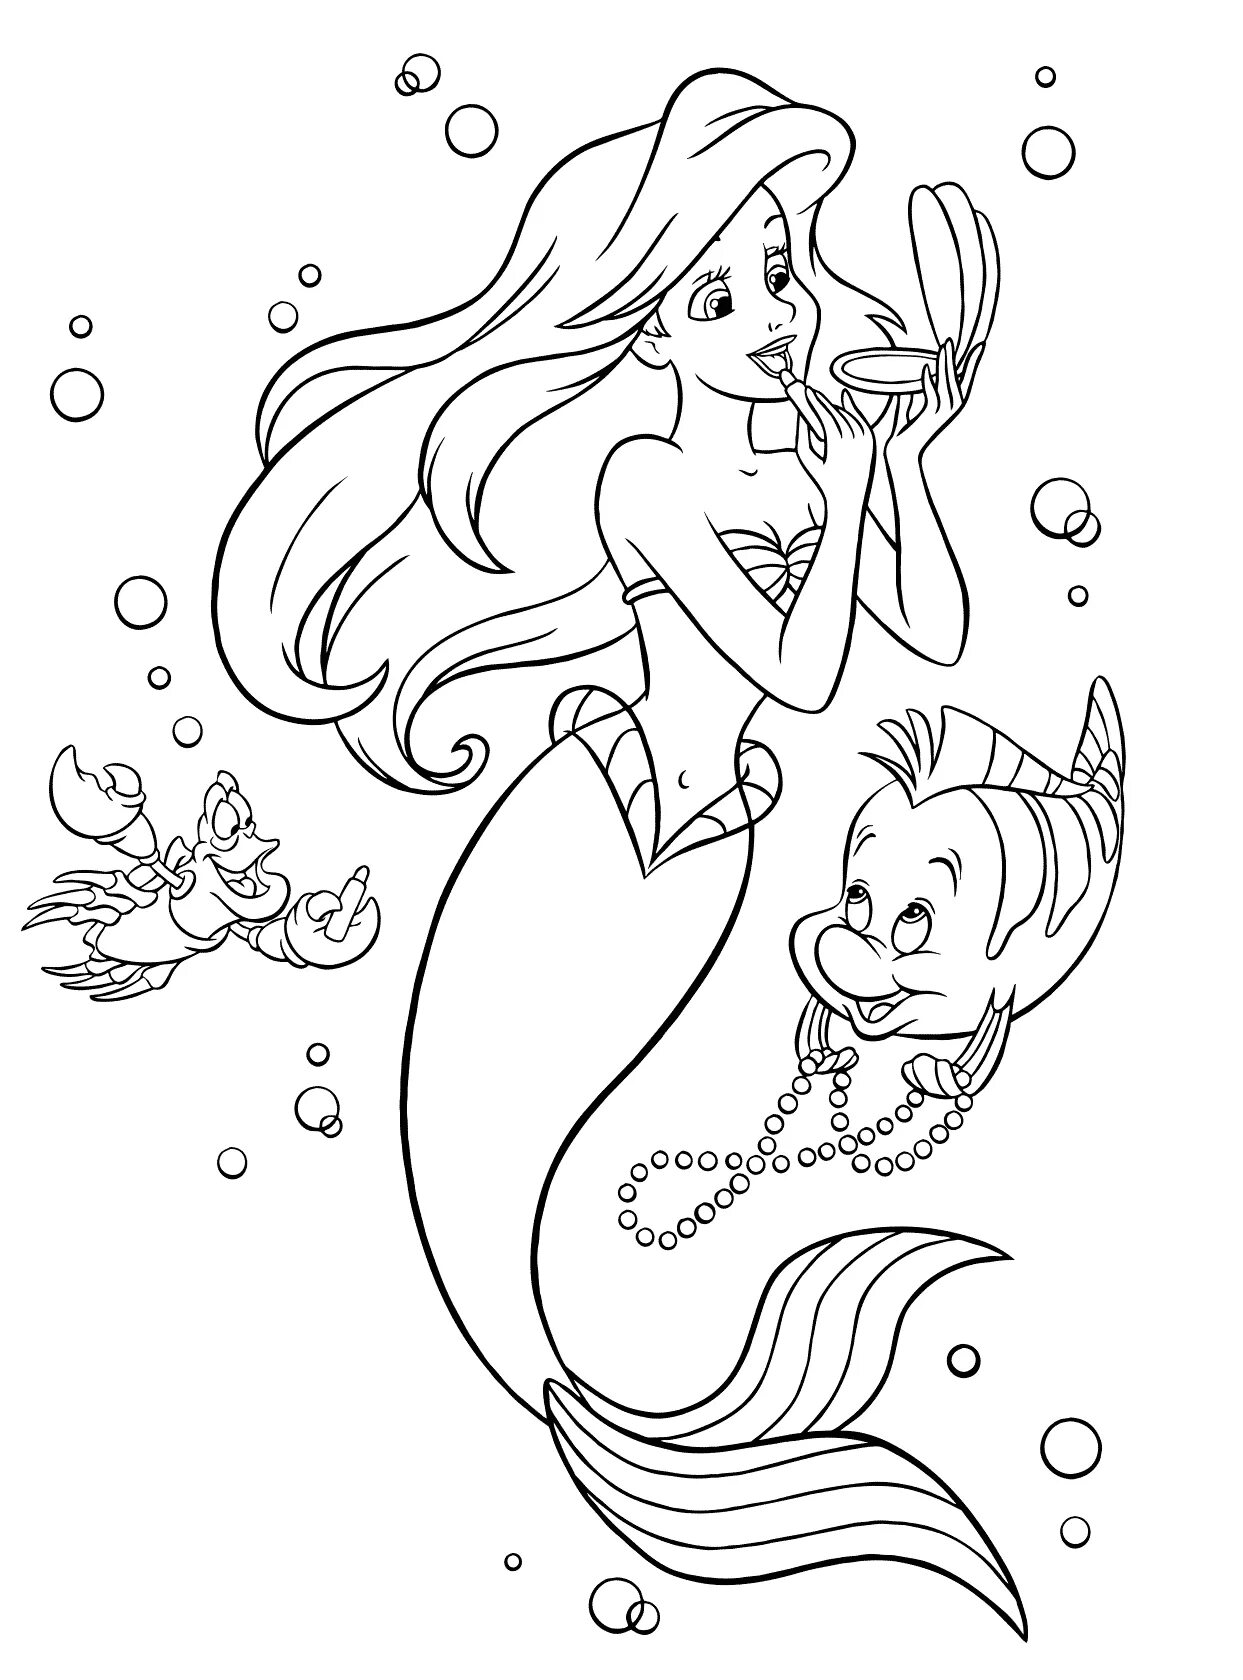 Mermaid pattern #10